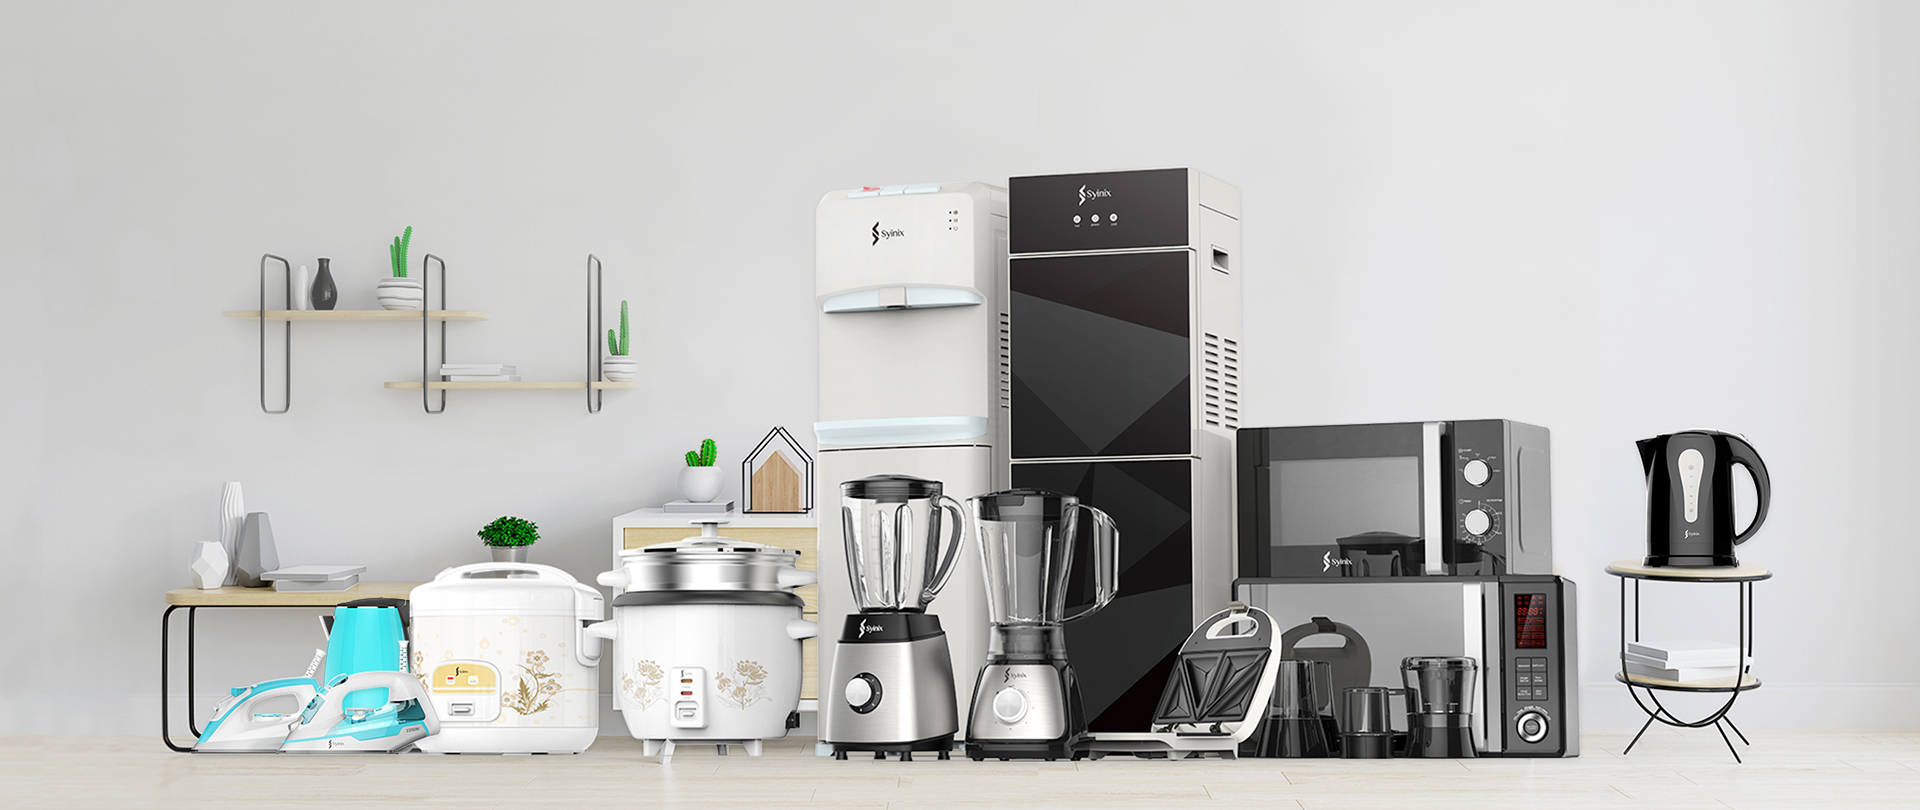 Small Domestic Appliances (SDA)